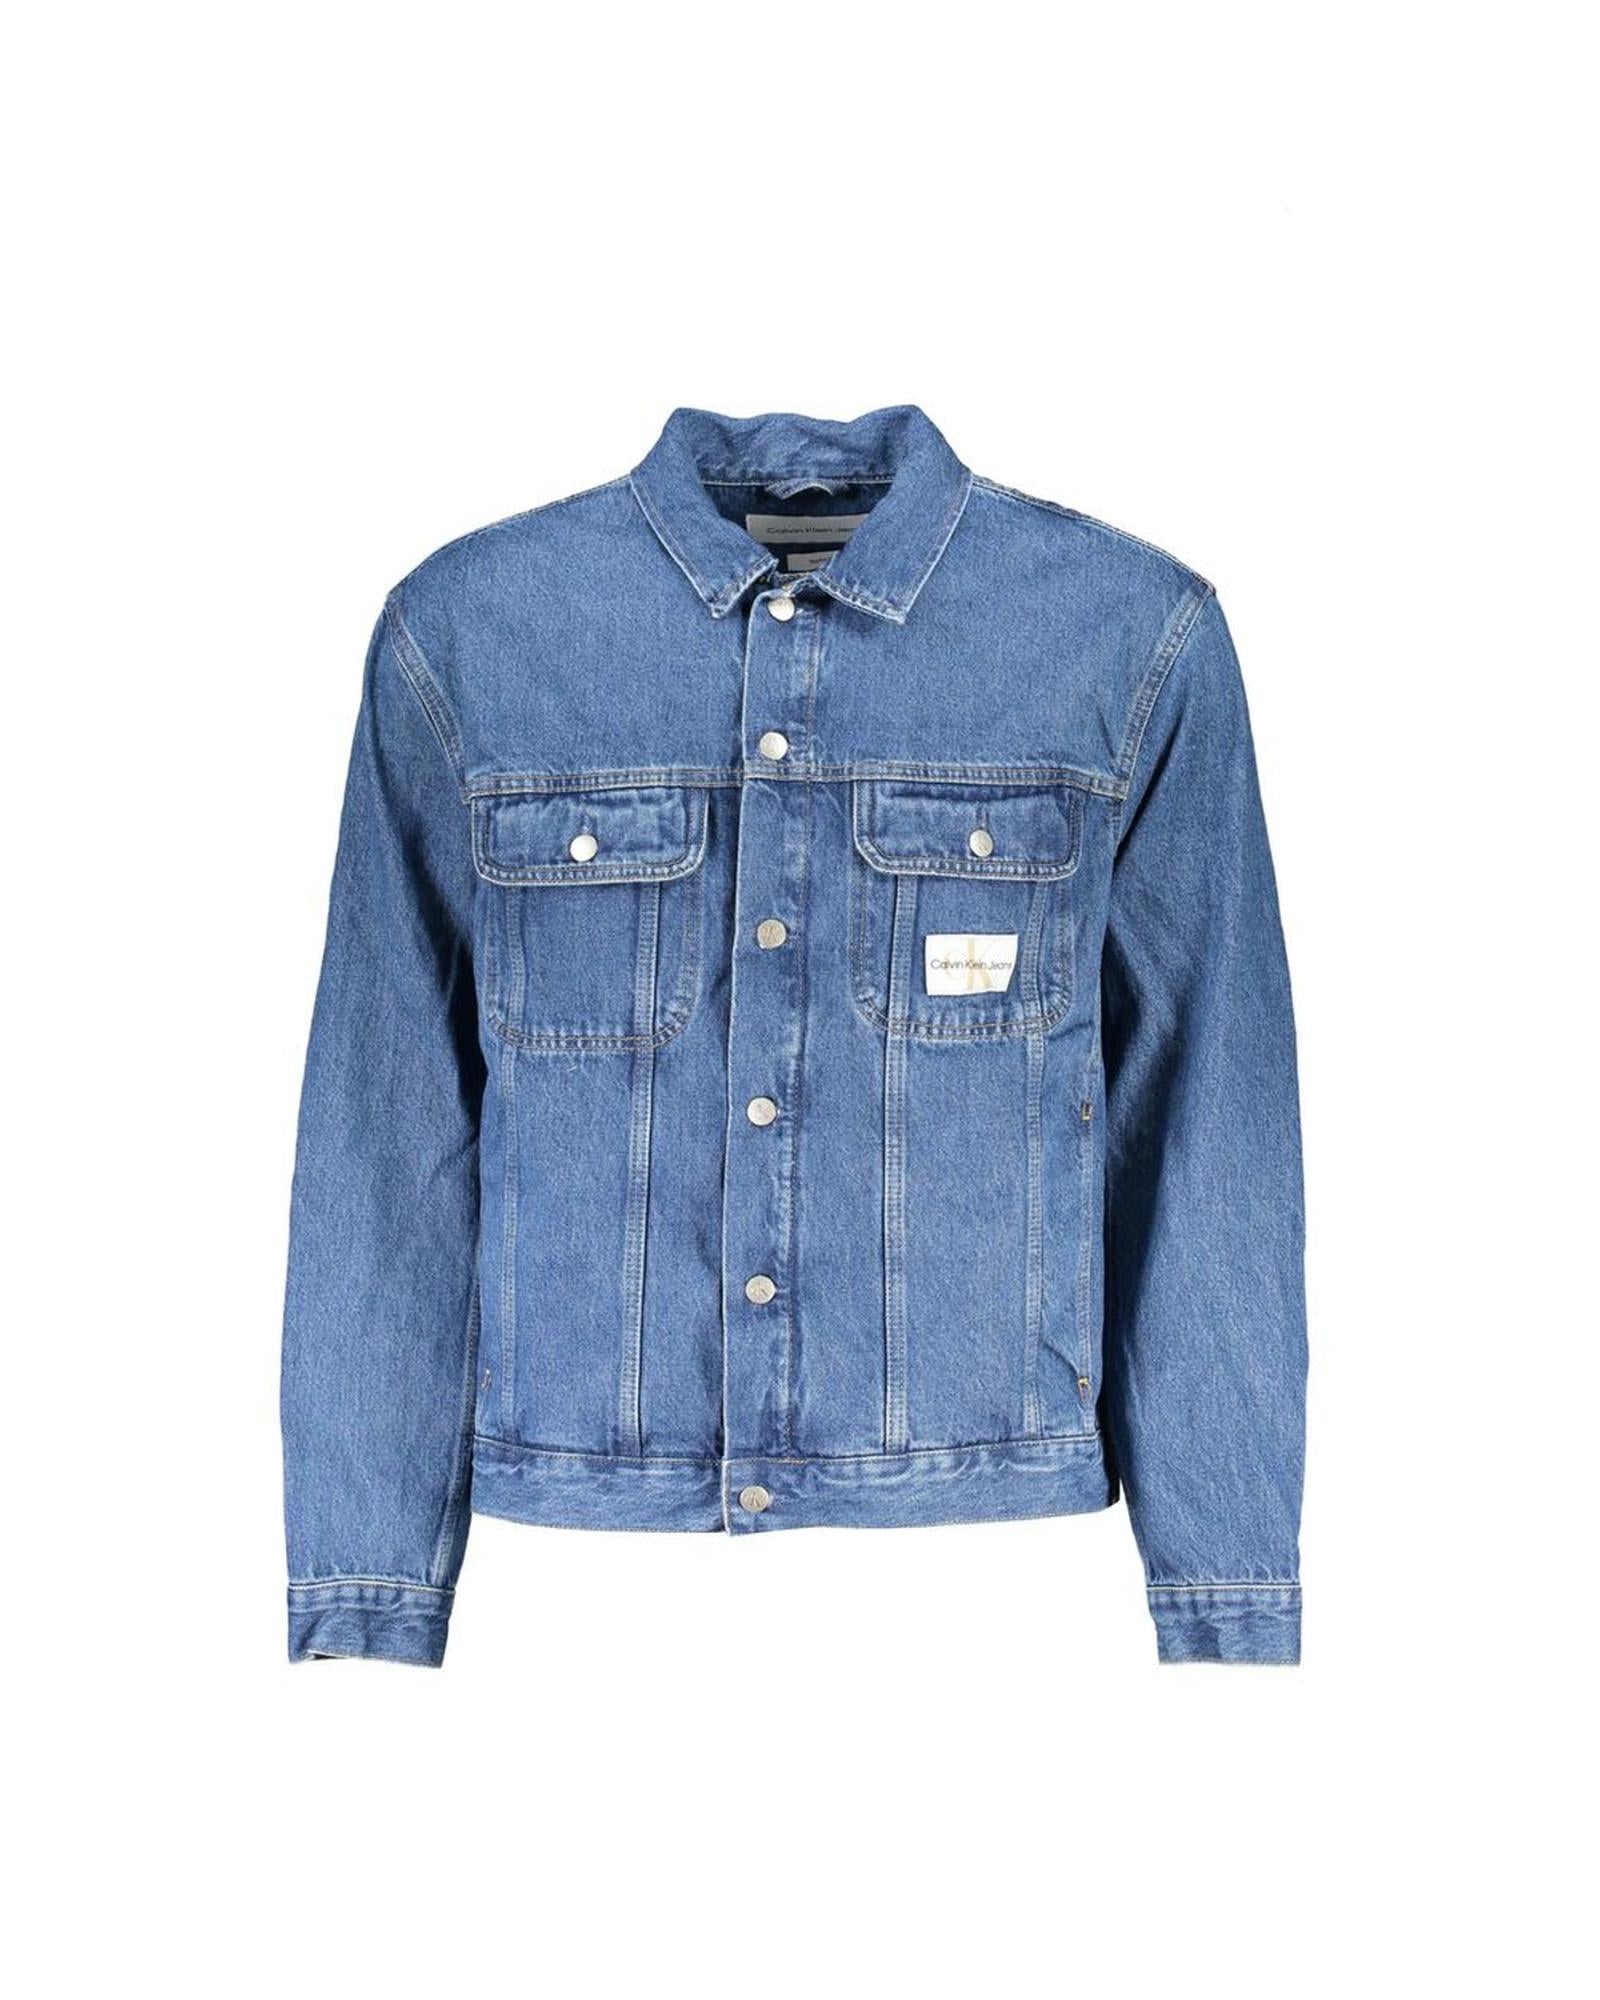 Men's Blue Cotton Jacket - S